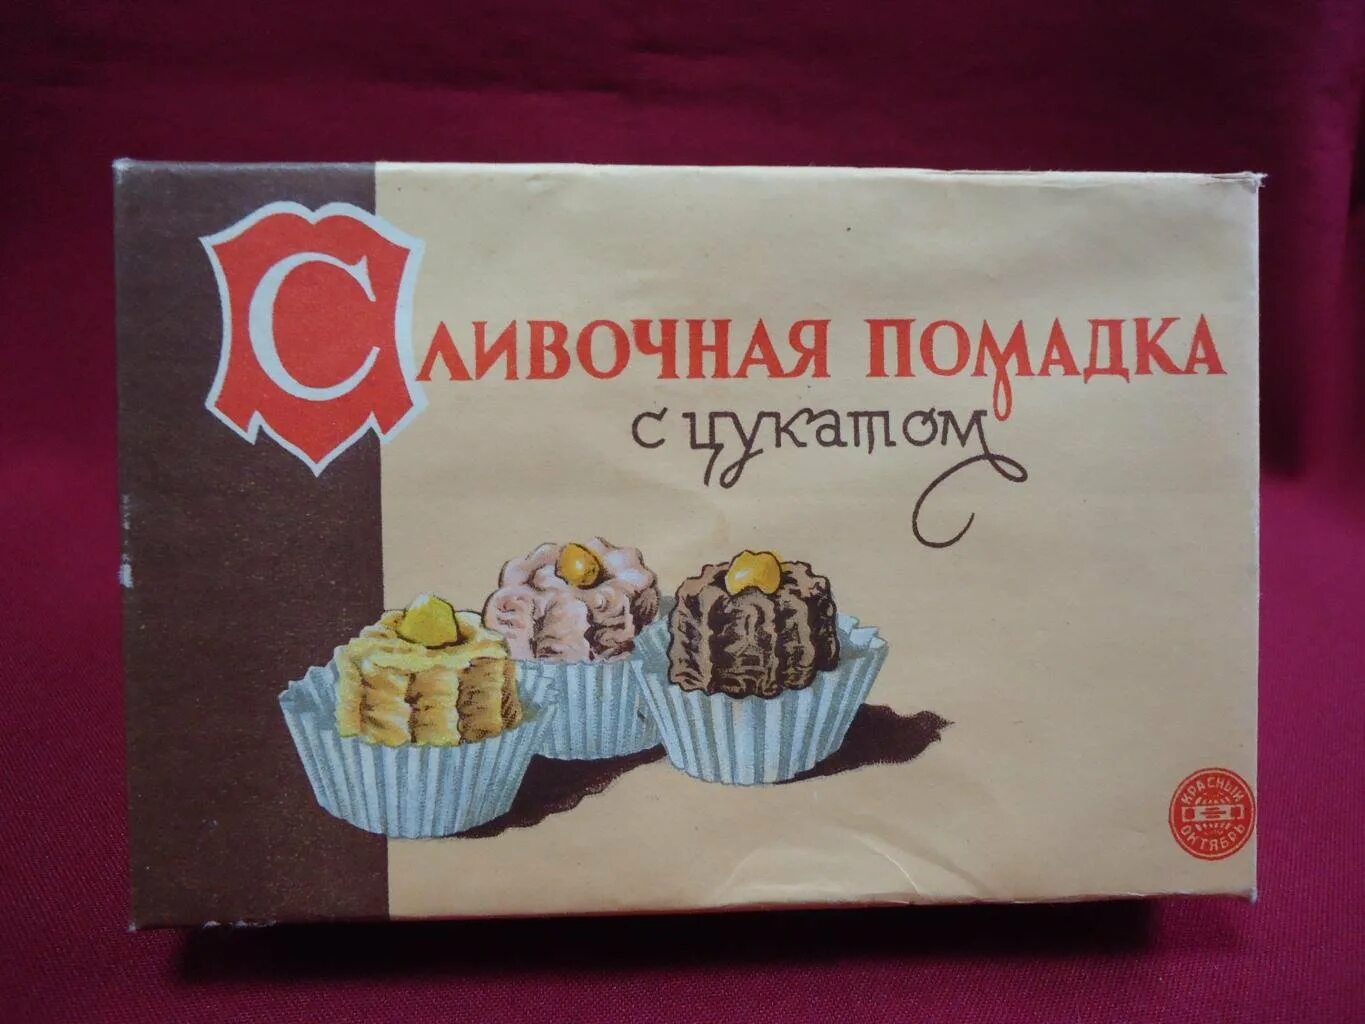 Советские конфеты. Советские шоколадные конфеты в коробках. Советские конфеты помадка. Советские конфеты в коробке.